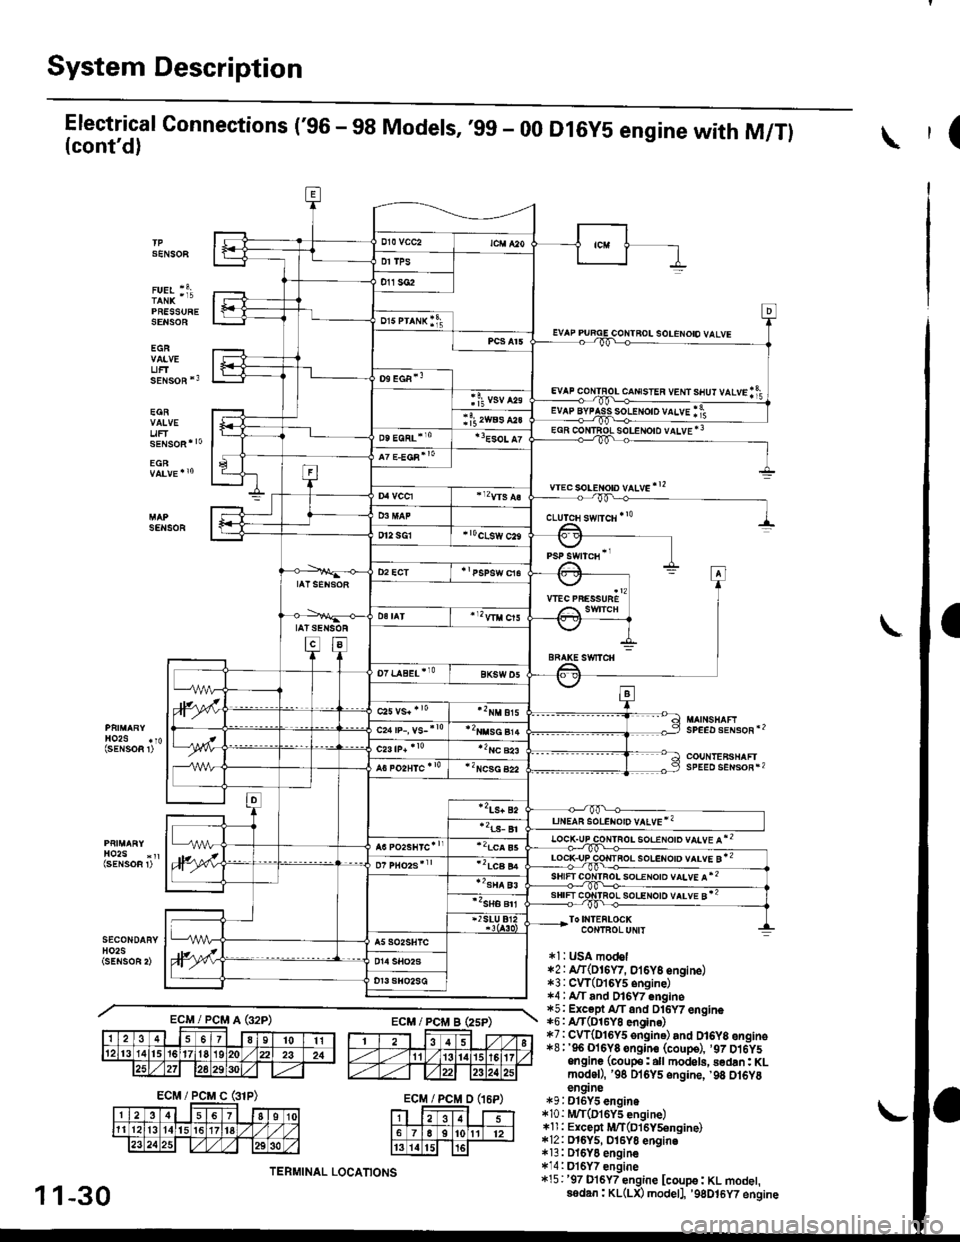 HONDA CIVIC 2000 6.G User Guide System Description
Electrical Connections (96 - 98 Models, ,99 - 00(contd)
PRESSURESENSOE
EGR
UFTsENsoR *3
EGR
uF
D16Y5 engine with M/Tl(
SENSOF
solENoto vALvE *3
wec soLeton vltve!2
SENSOR
SPEED s